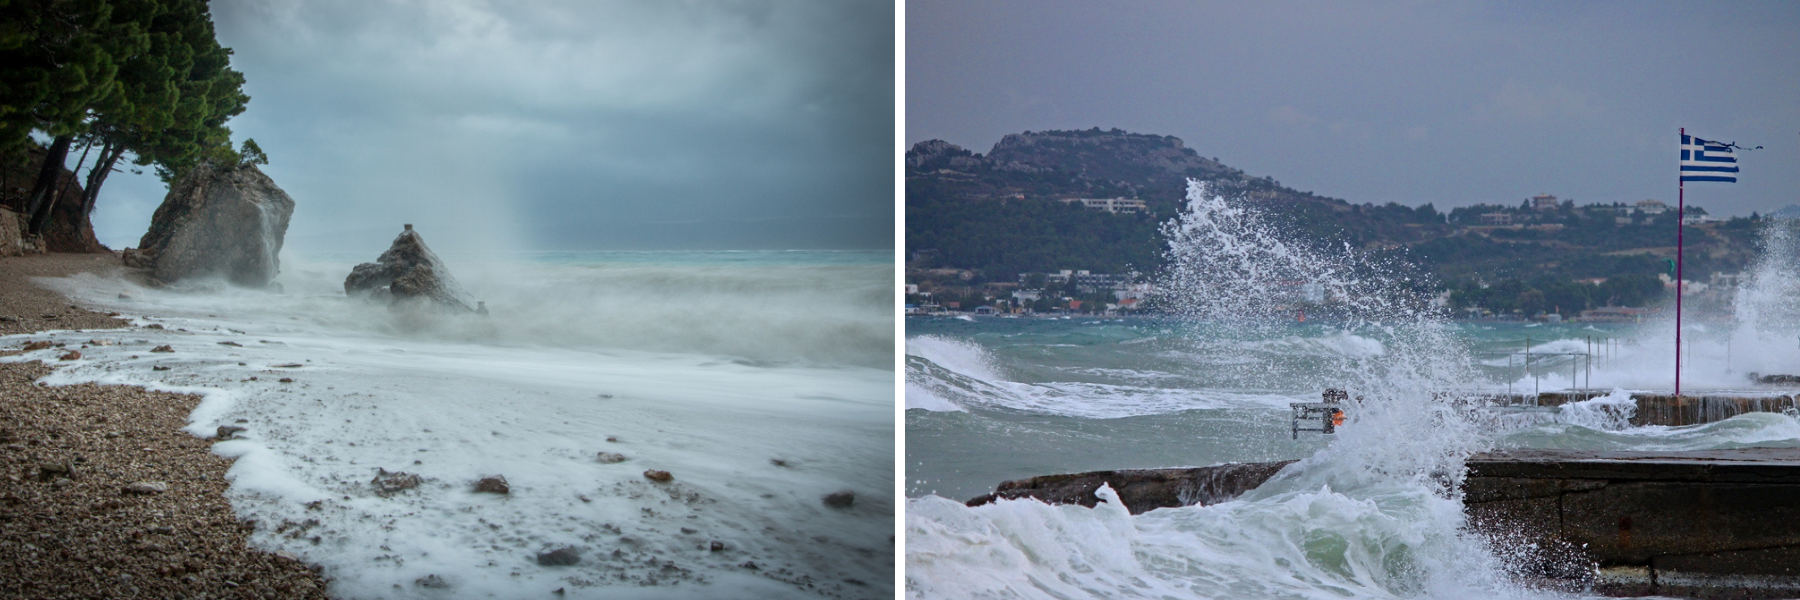 W Chorwacji i Grecji można spotkać się z nieprzyjemnymi wiatrami i pogodą.